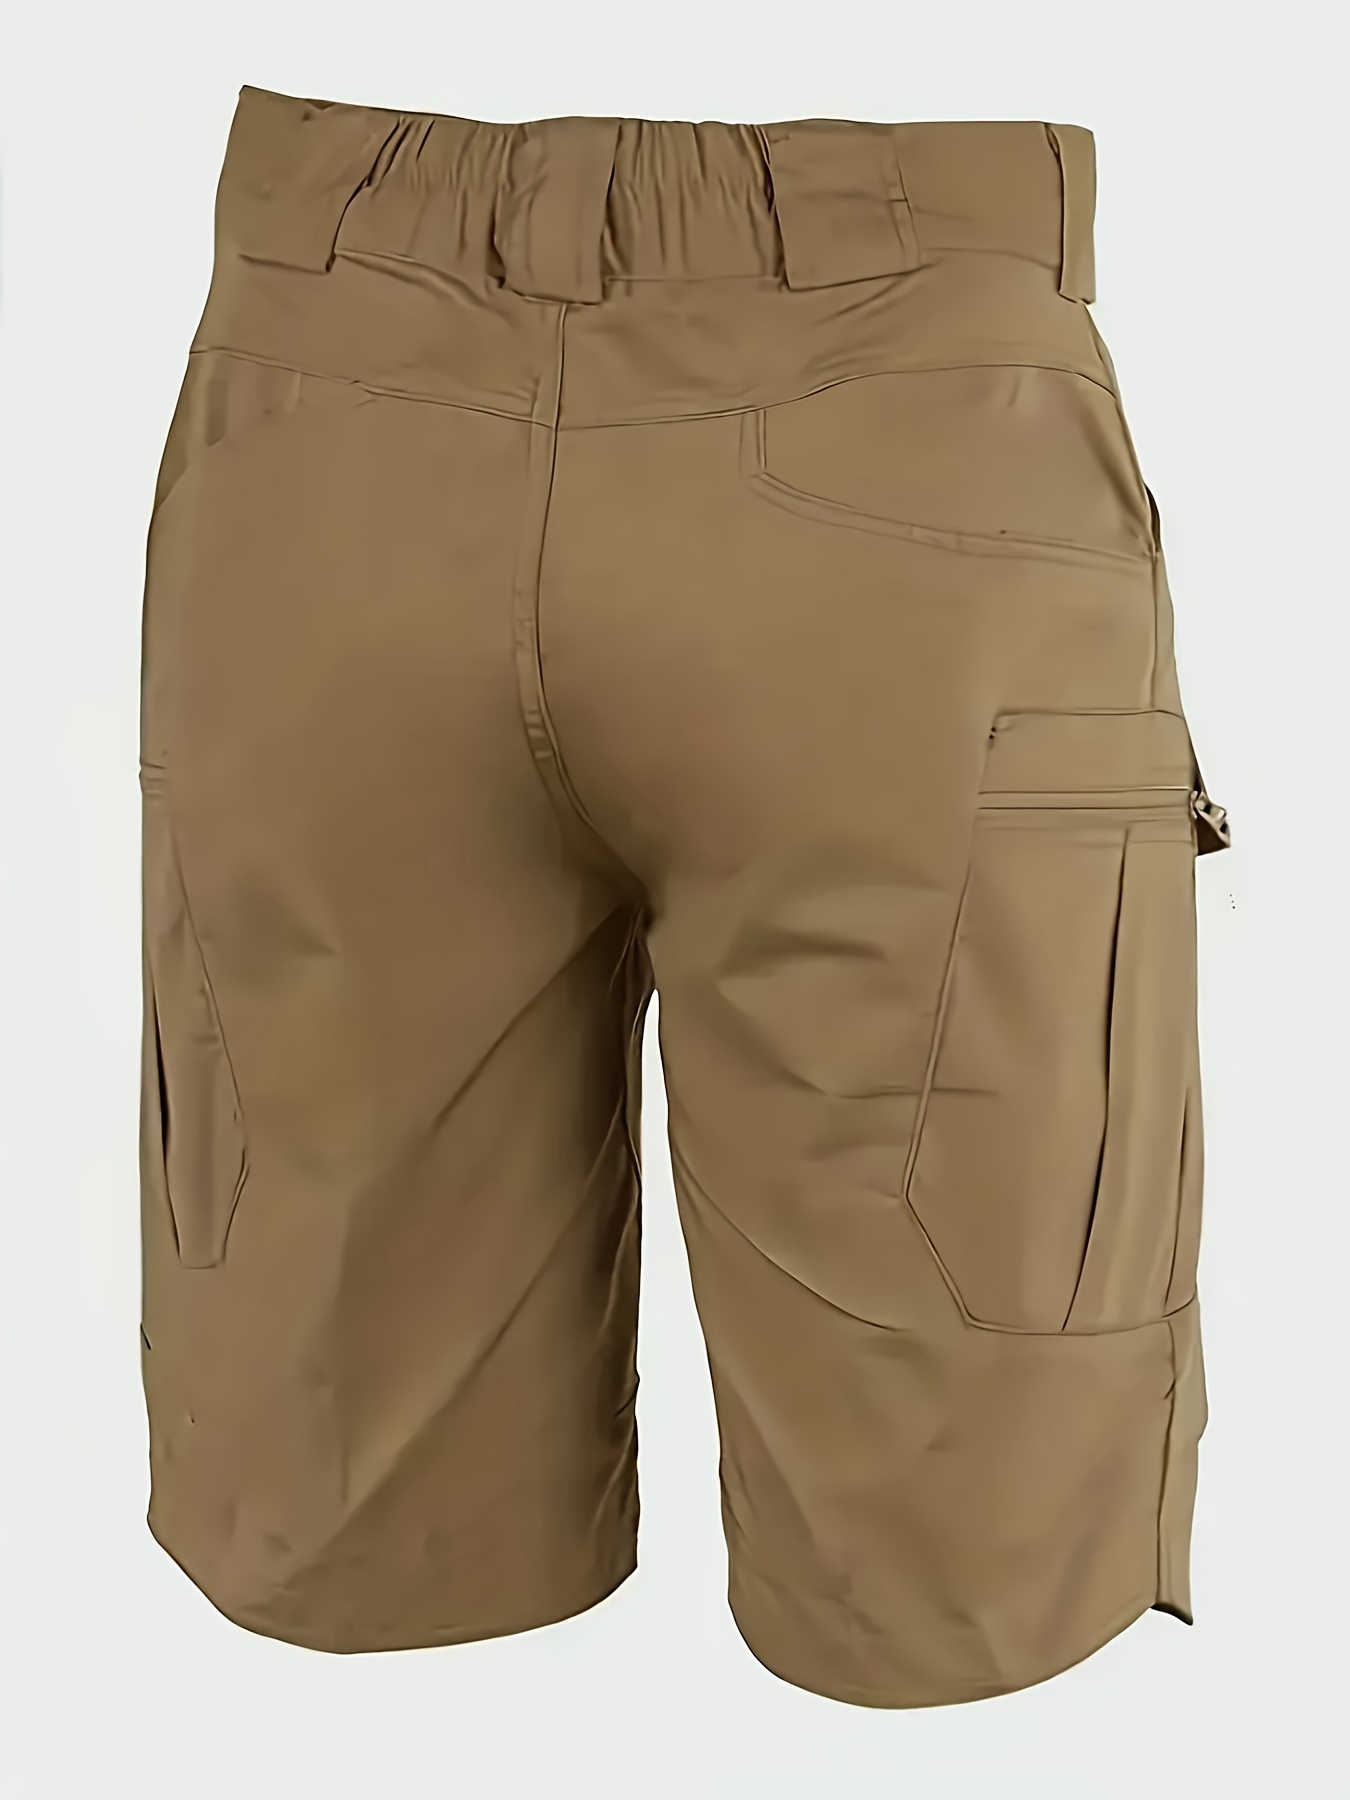 Bermudas de secado rápido para hombre, pantalones cortos elásticos tipo  cargo para senderismo, viajes, golf, trabajo casual, para hombre,  pantalones